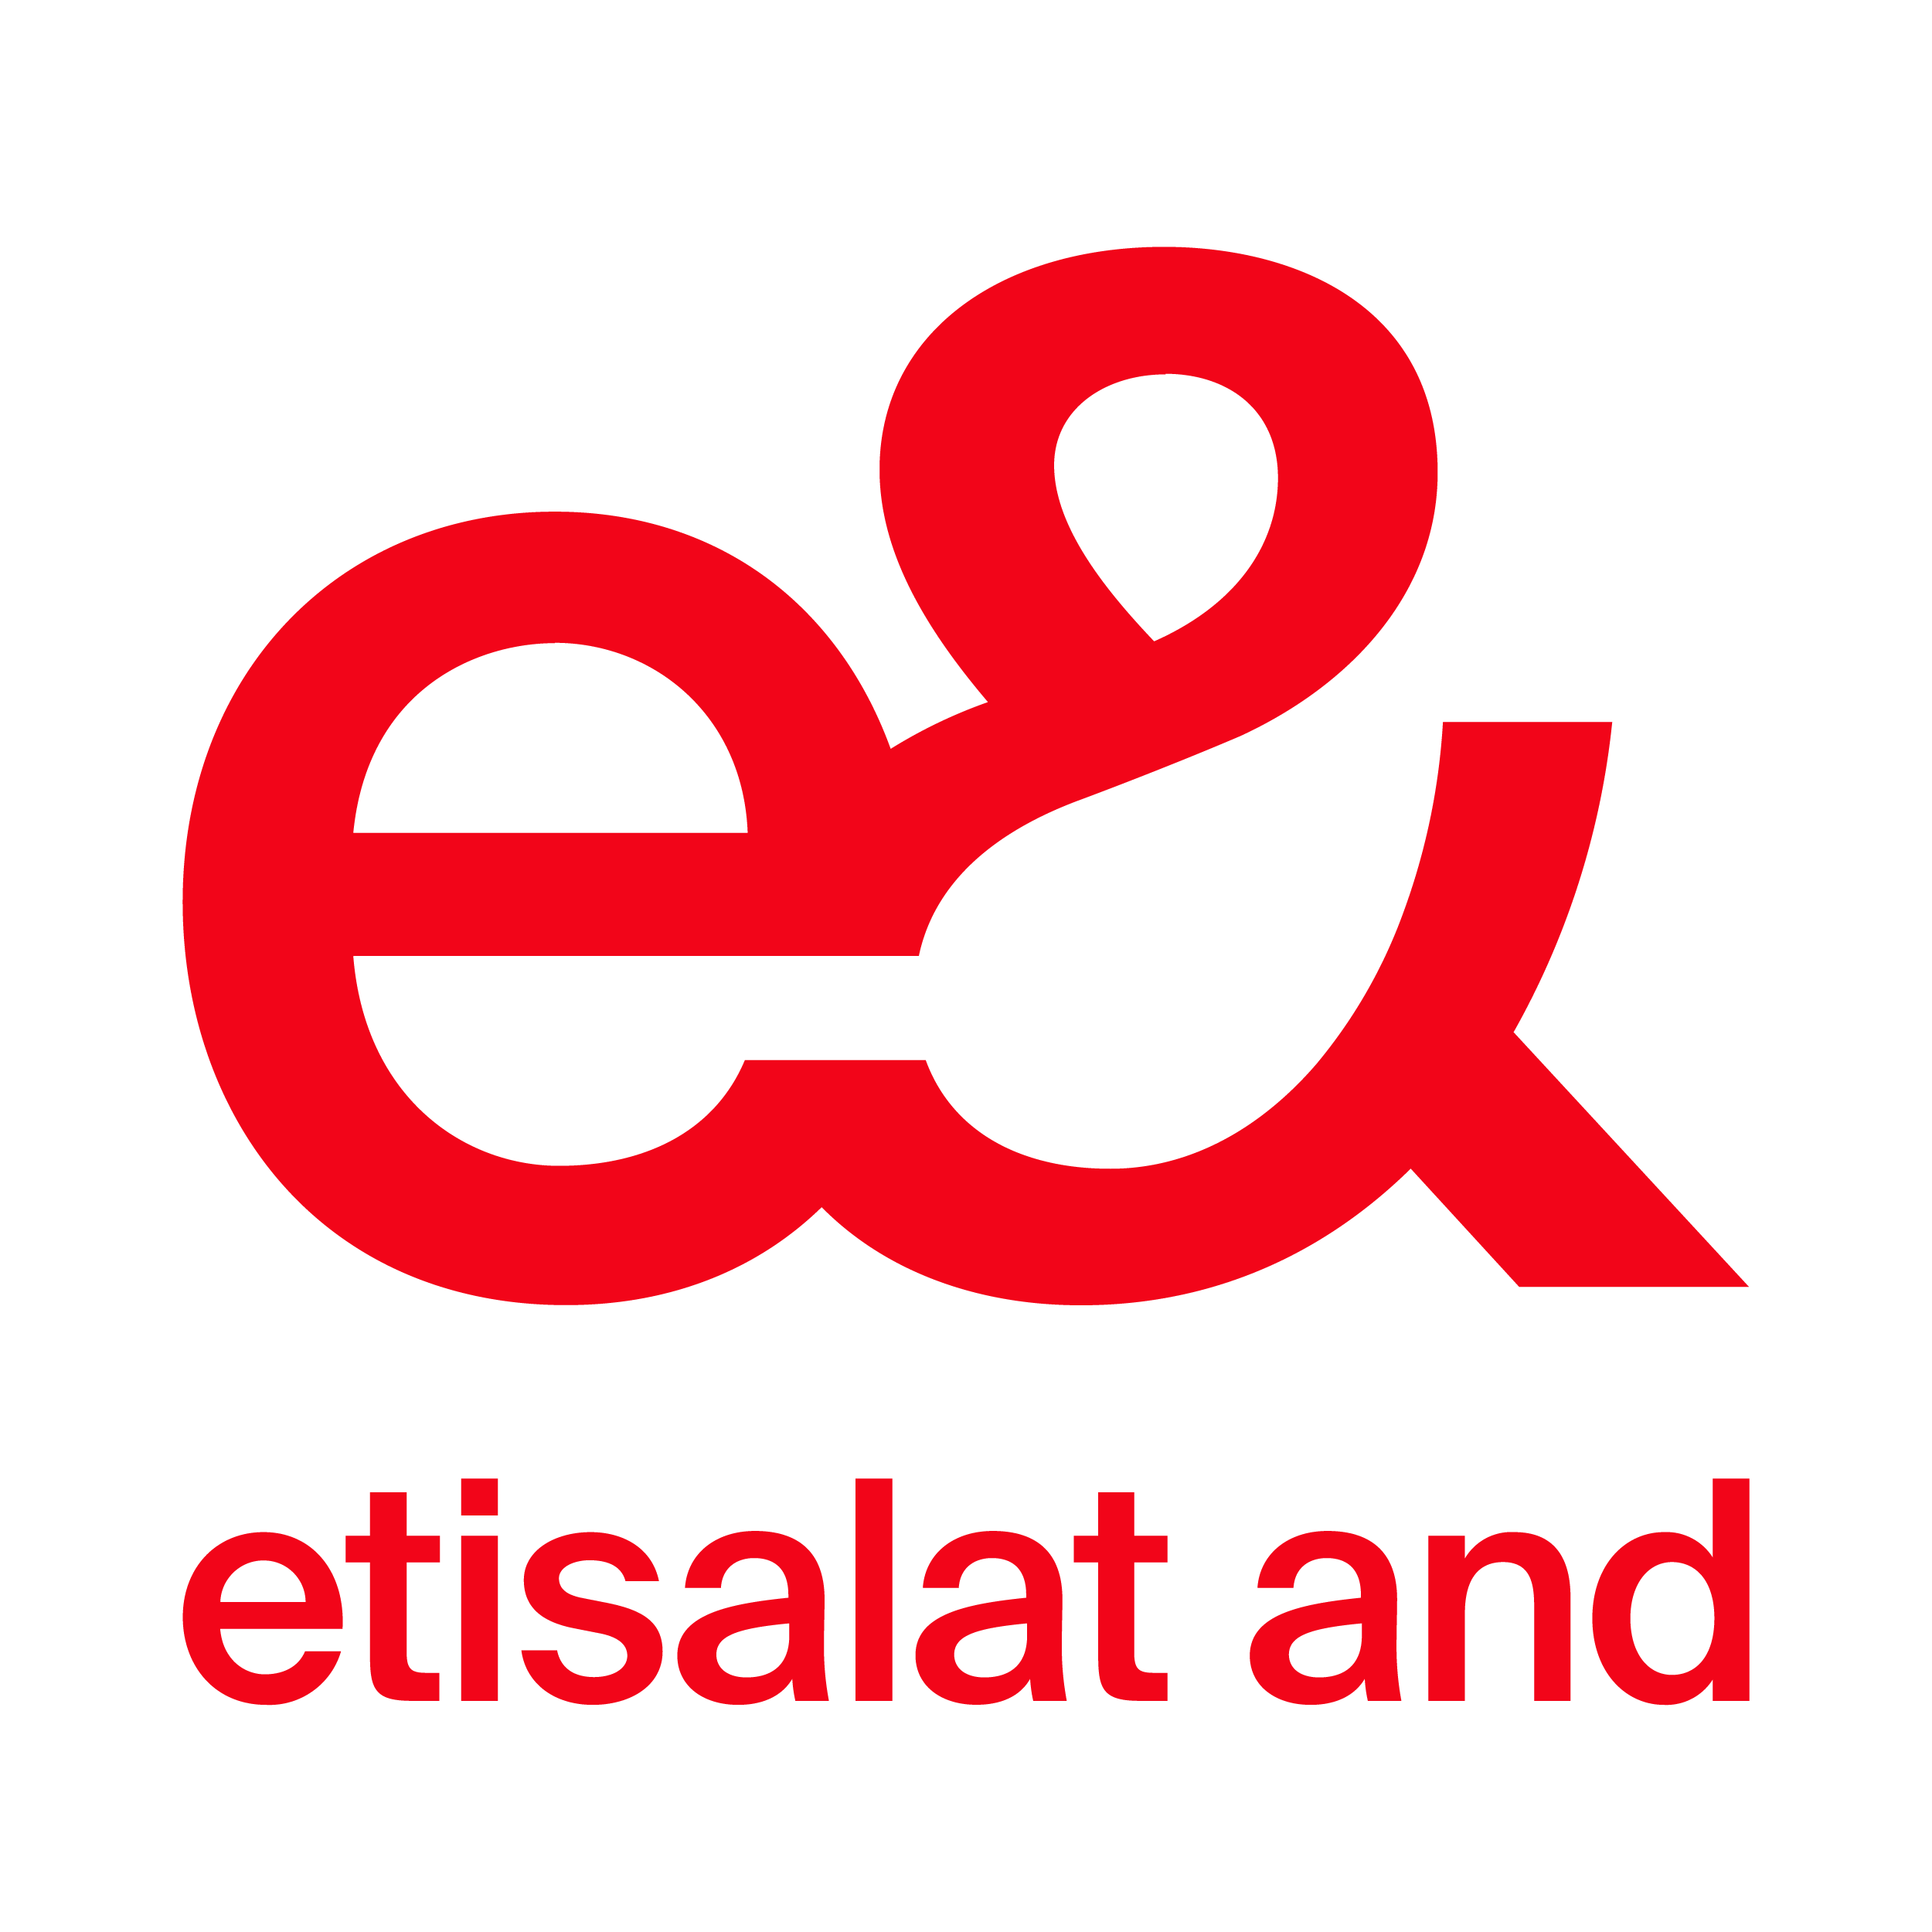 اتصالات من e& في مصر تعلن تغيير علامتها التجارية إلى 